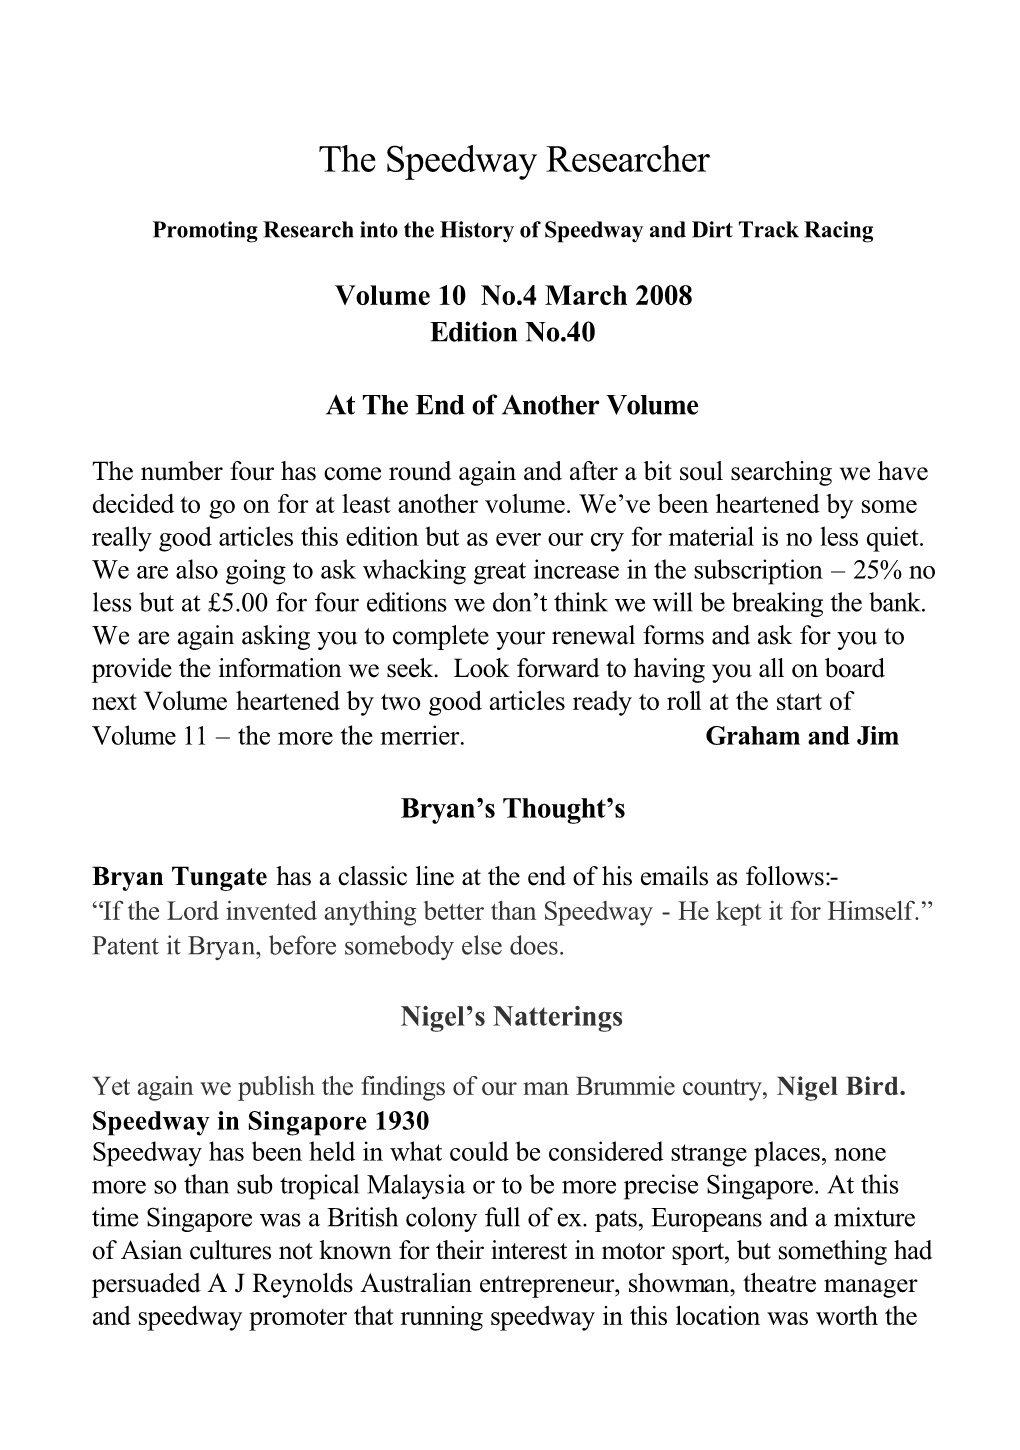 Volume 10 No.4 March 2008 Edition No.40